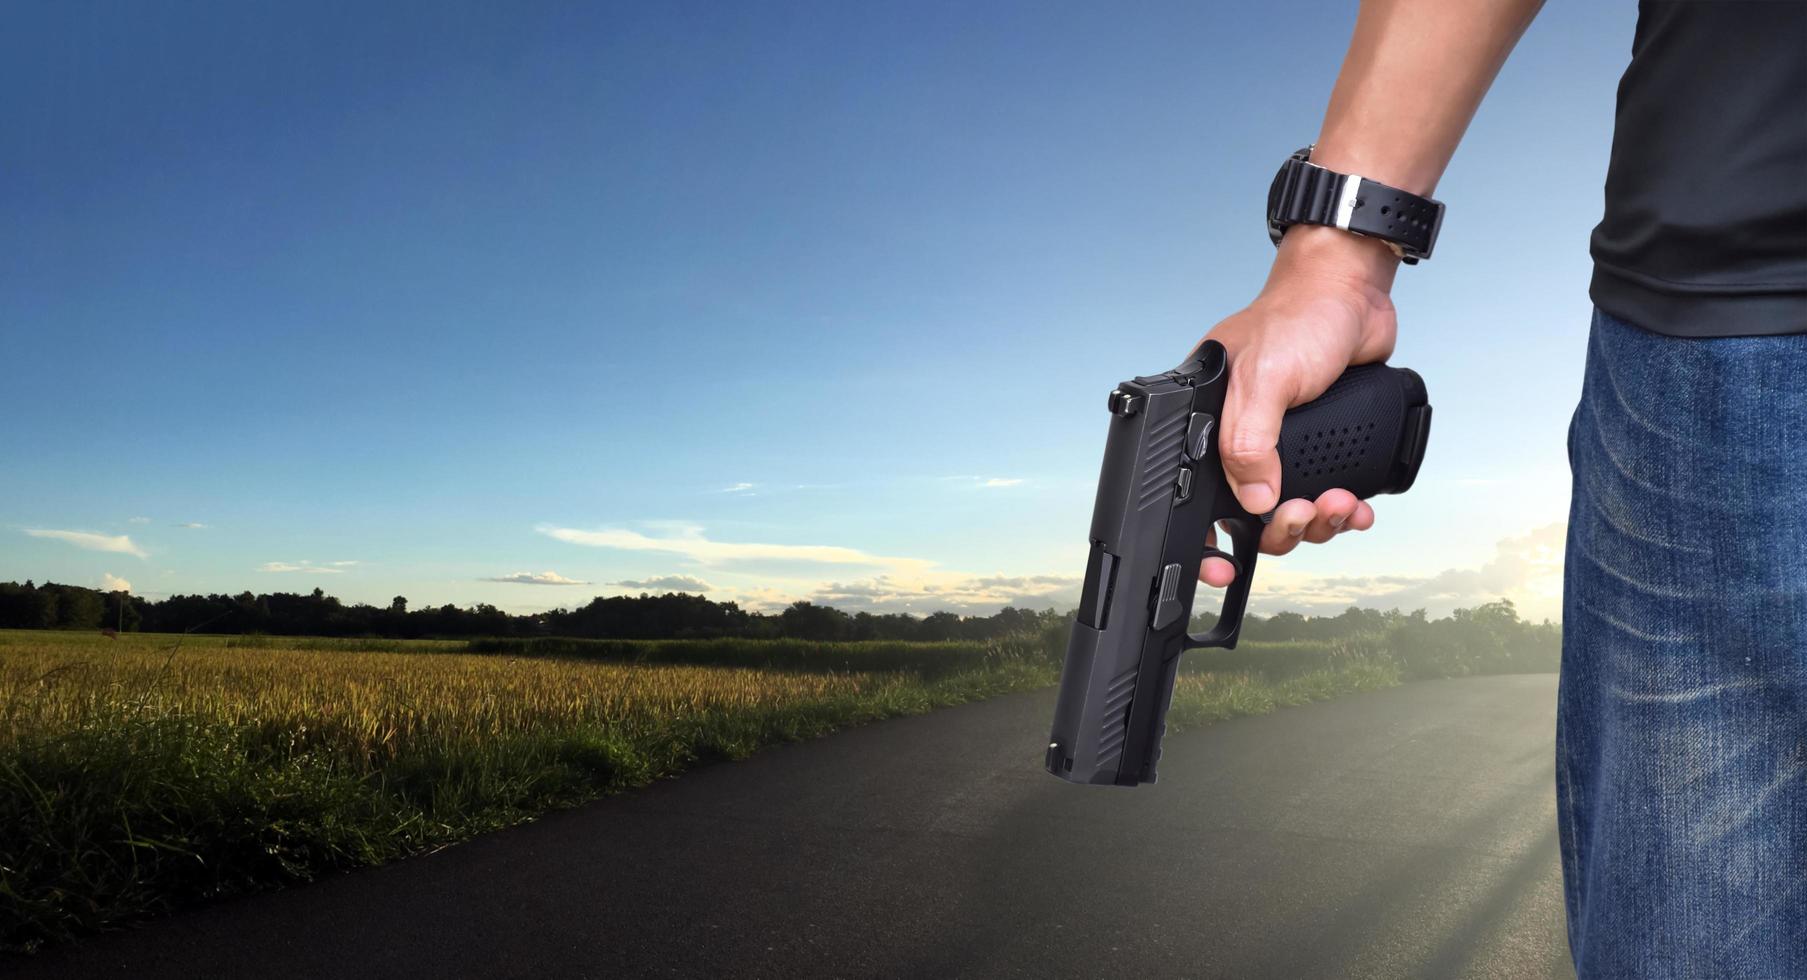 Pistola automática de 9 mm sujeta en la mano derecha del tirador, concepto de seguridad, robo, gángster, guardaespaldas en todo el mundo. enfoque selectivo en pistola. foto